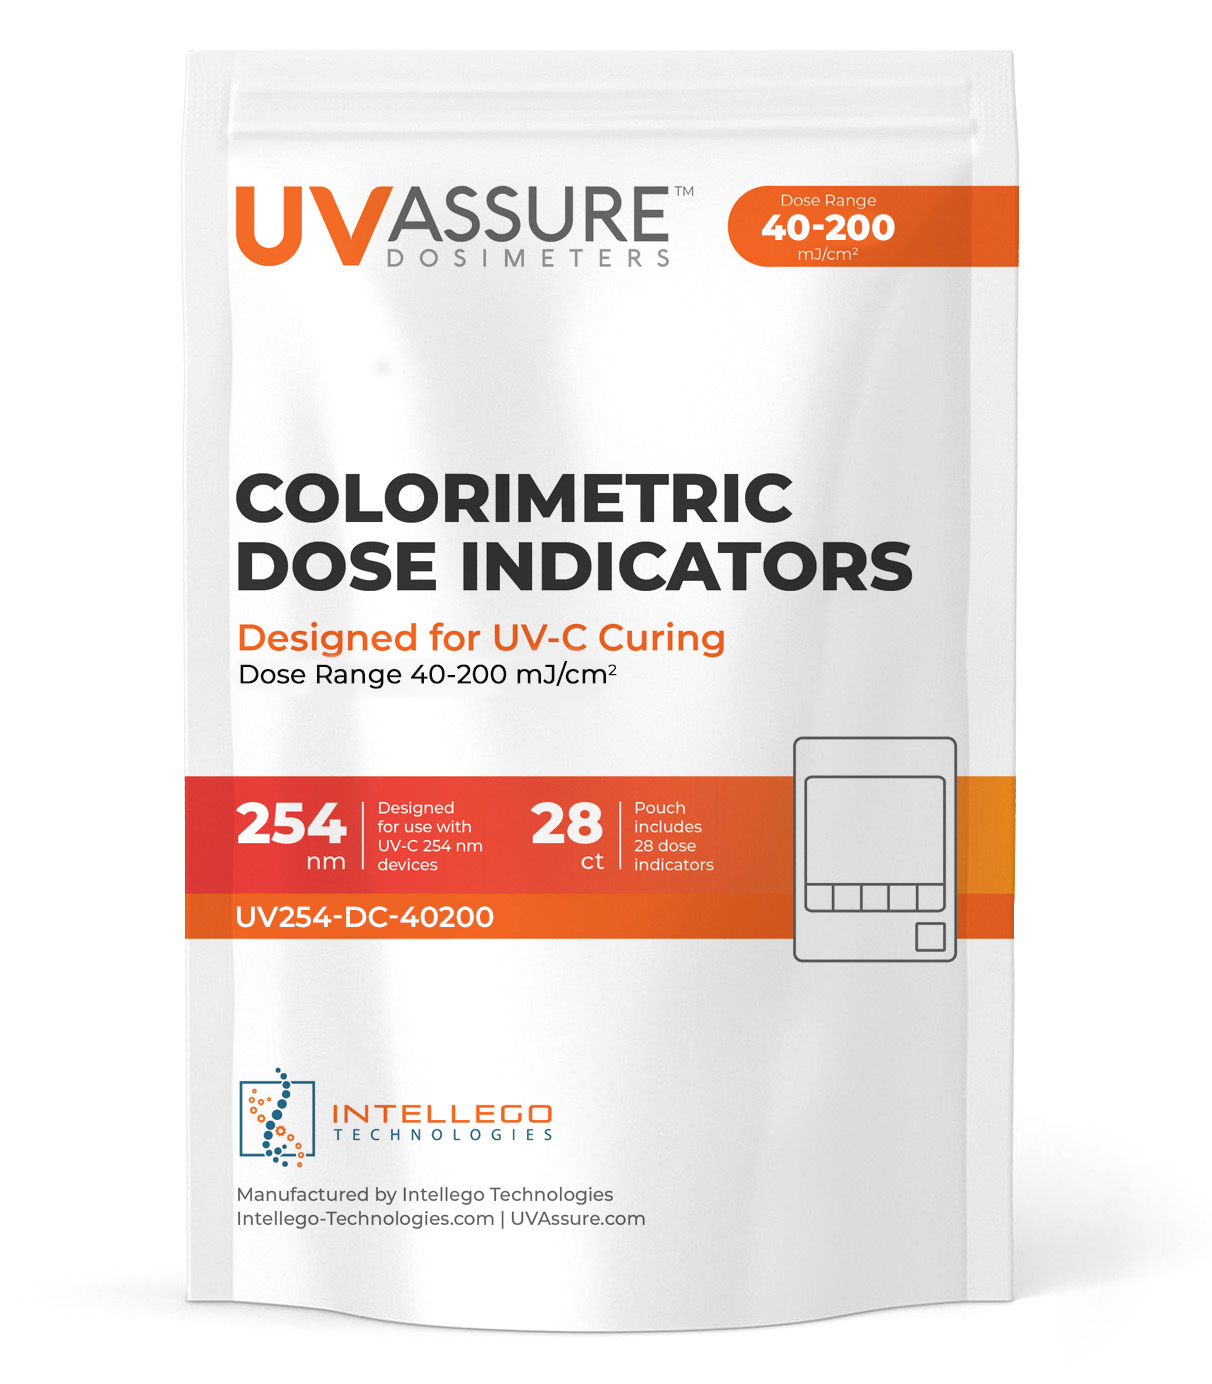 UV Assure 40-200 mJ dosimeter card